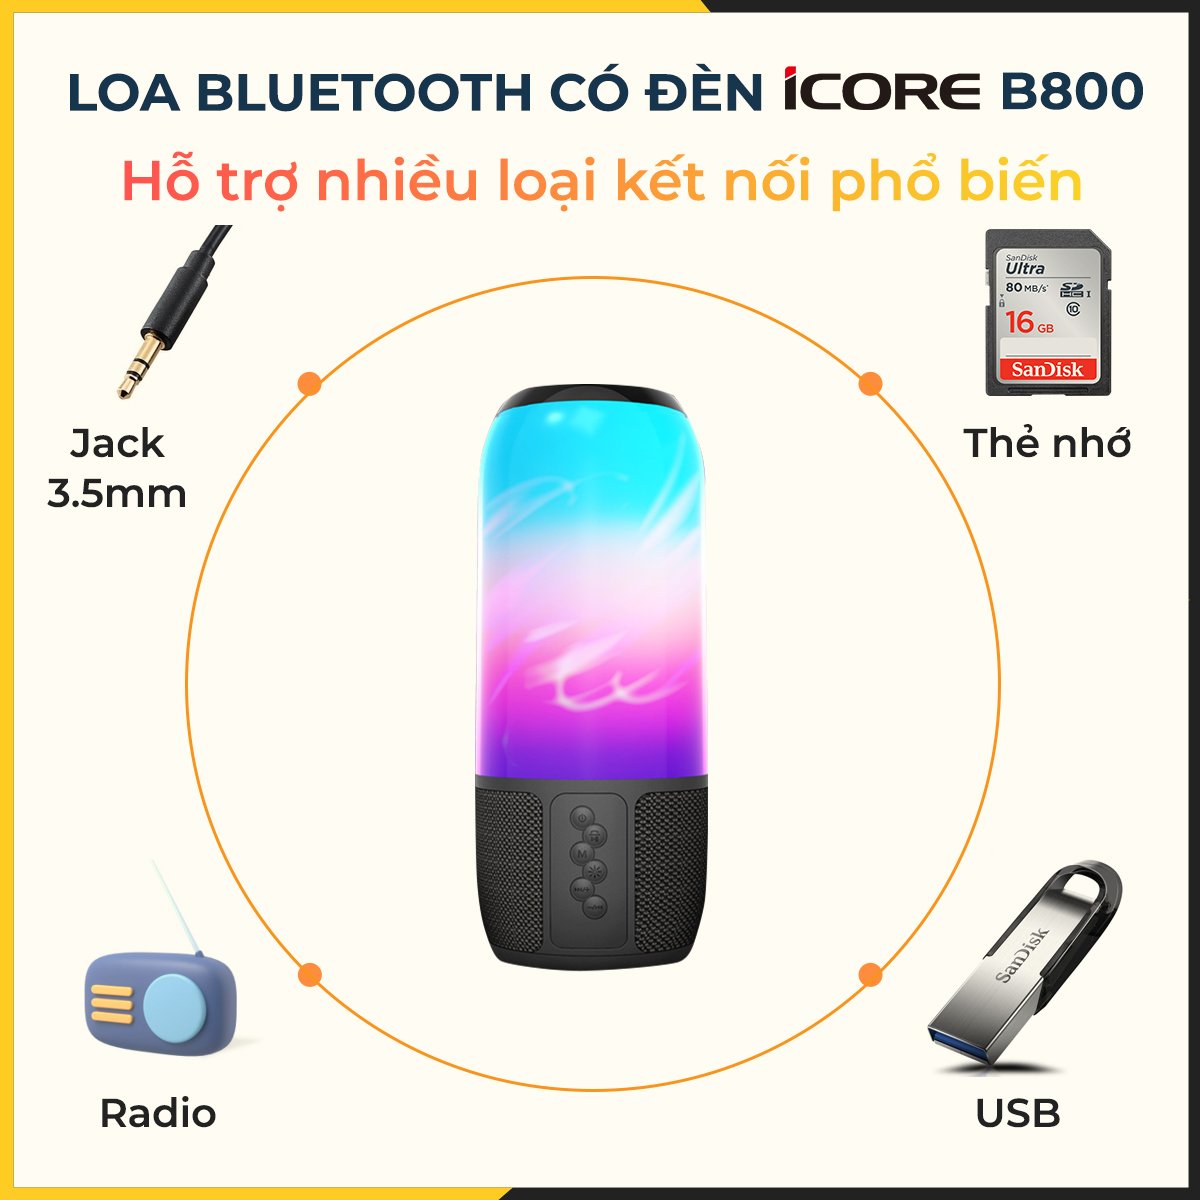 Loa Bluetooth có đèn iCore B800